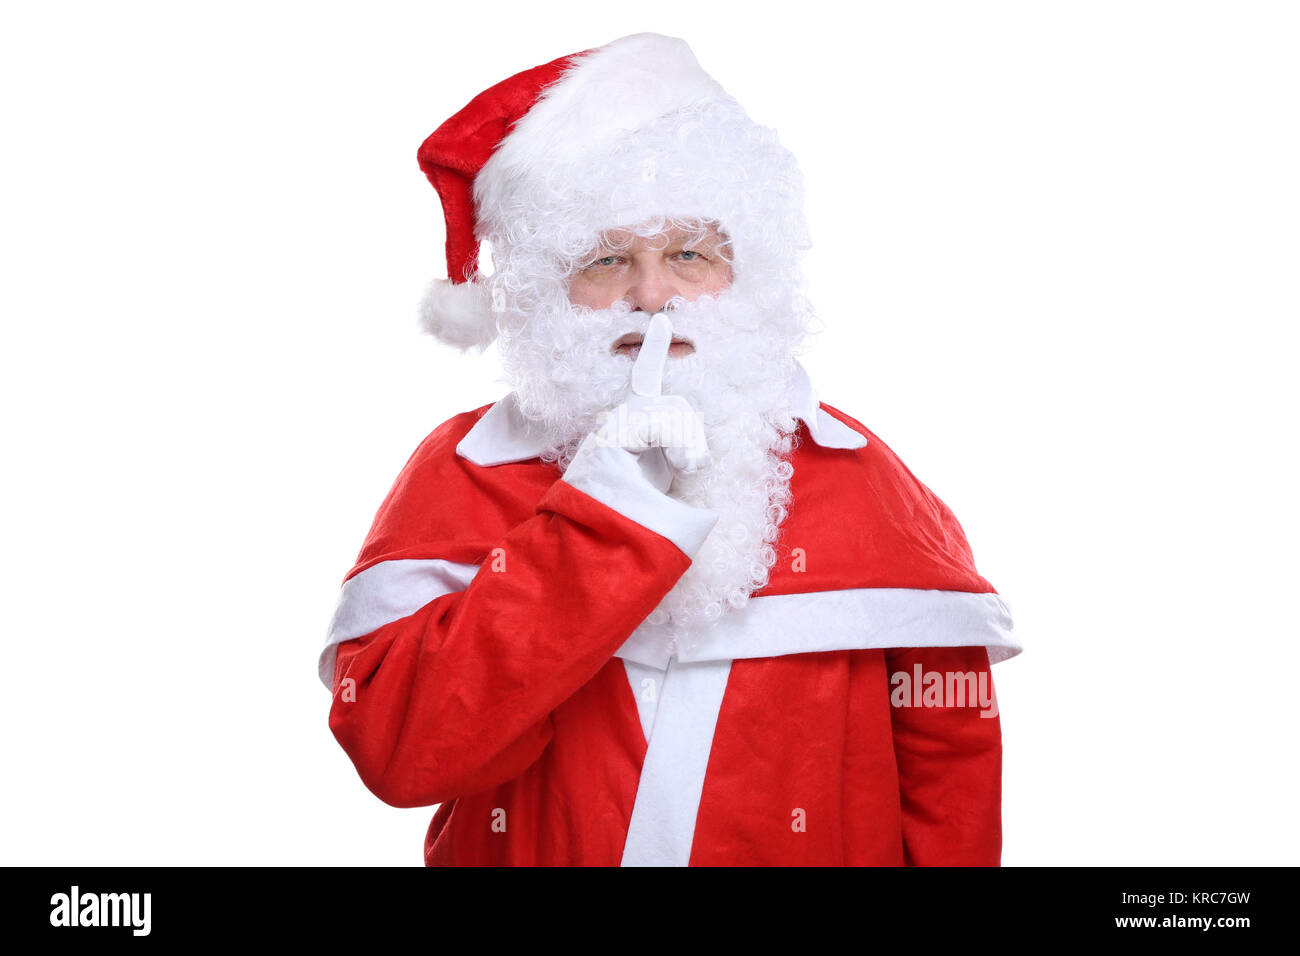 Weihnachtsmann Nikolaus hat Weihnachten Geheimnis Freisteller freigestellt vor einem weissen Hintergrund Stock Photo